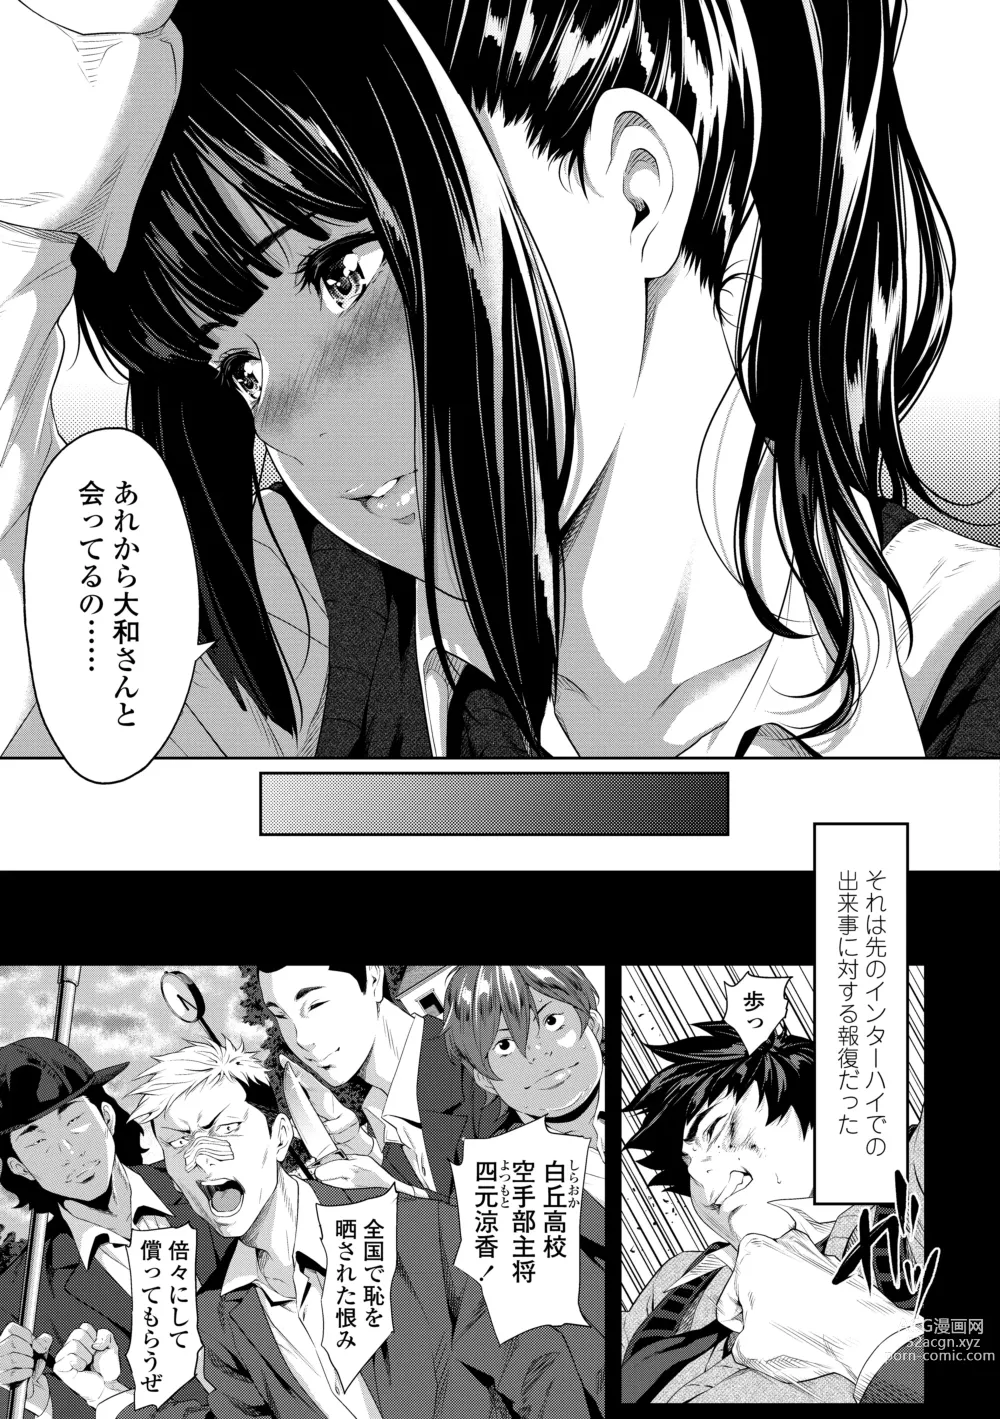 Page 9 of manga Tooi Kimi ni, Boku wa Todokanai - I cant reach you, far away.